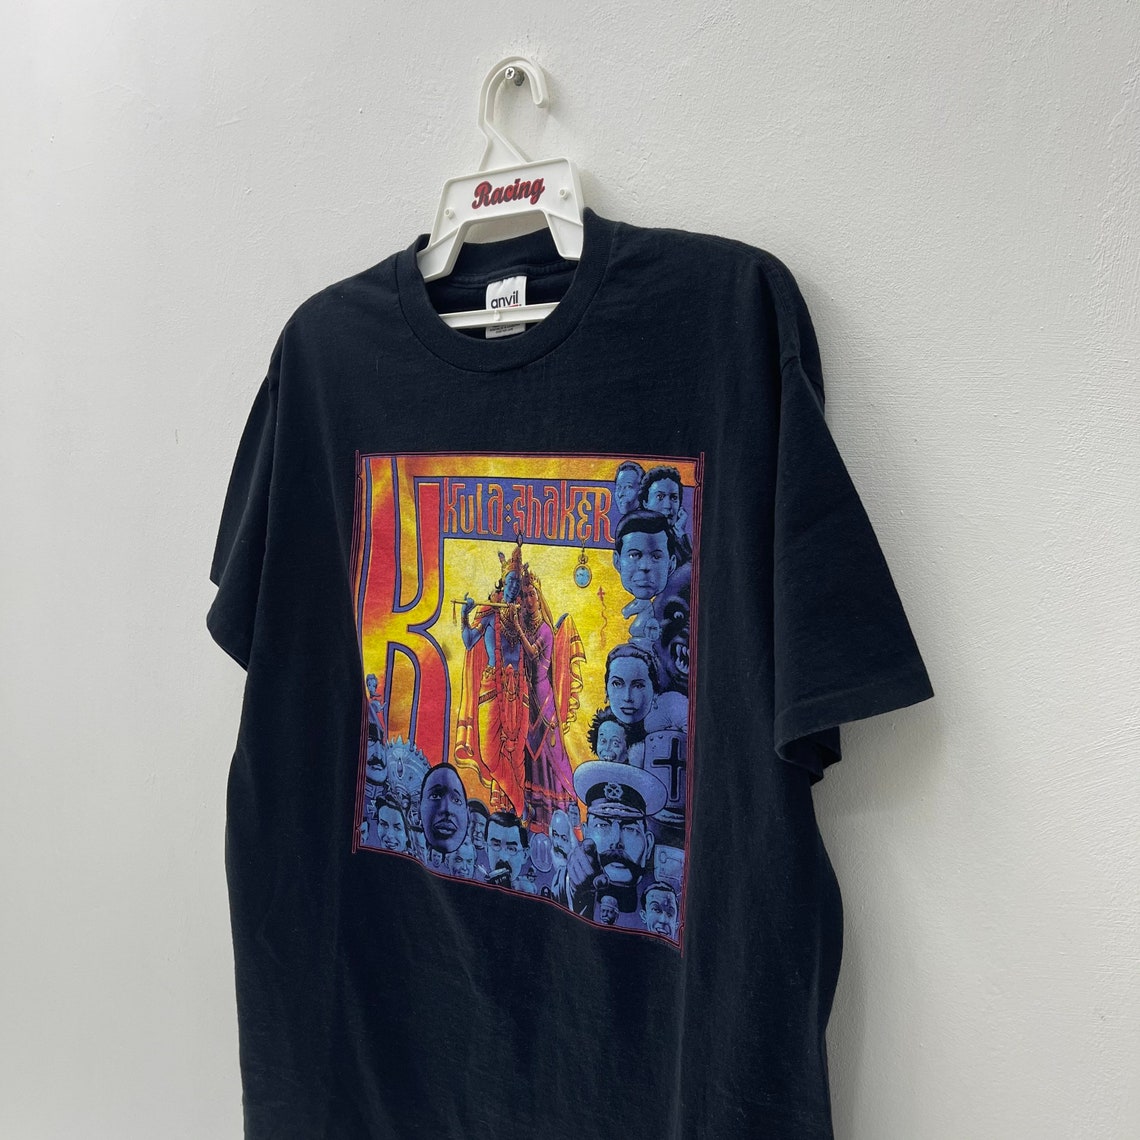 Kula Shaker Rock Band Vintage 1997 T-Shirt Sly The Charlatans | Etsy